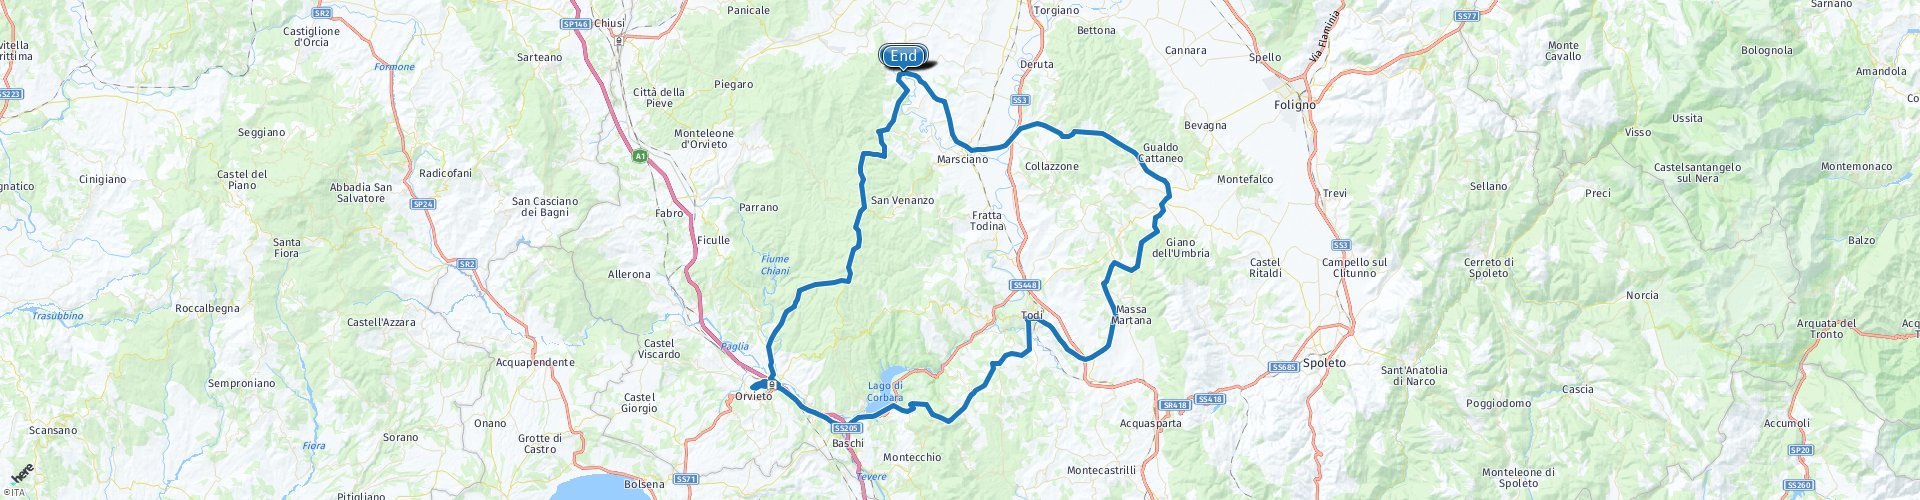 Roundtrip from Spina to Orvieto and Todi  La più grande collezione di  percorsi verificati grazie a MyRoute-app RouteXperts